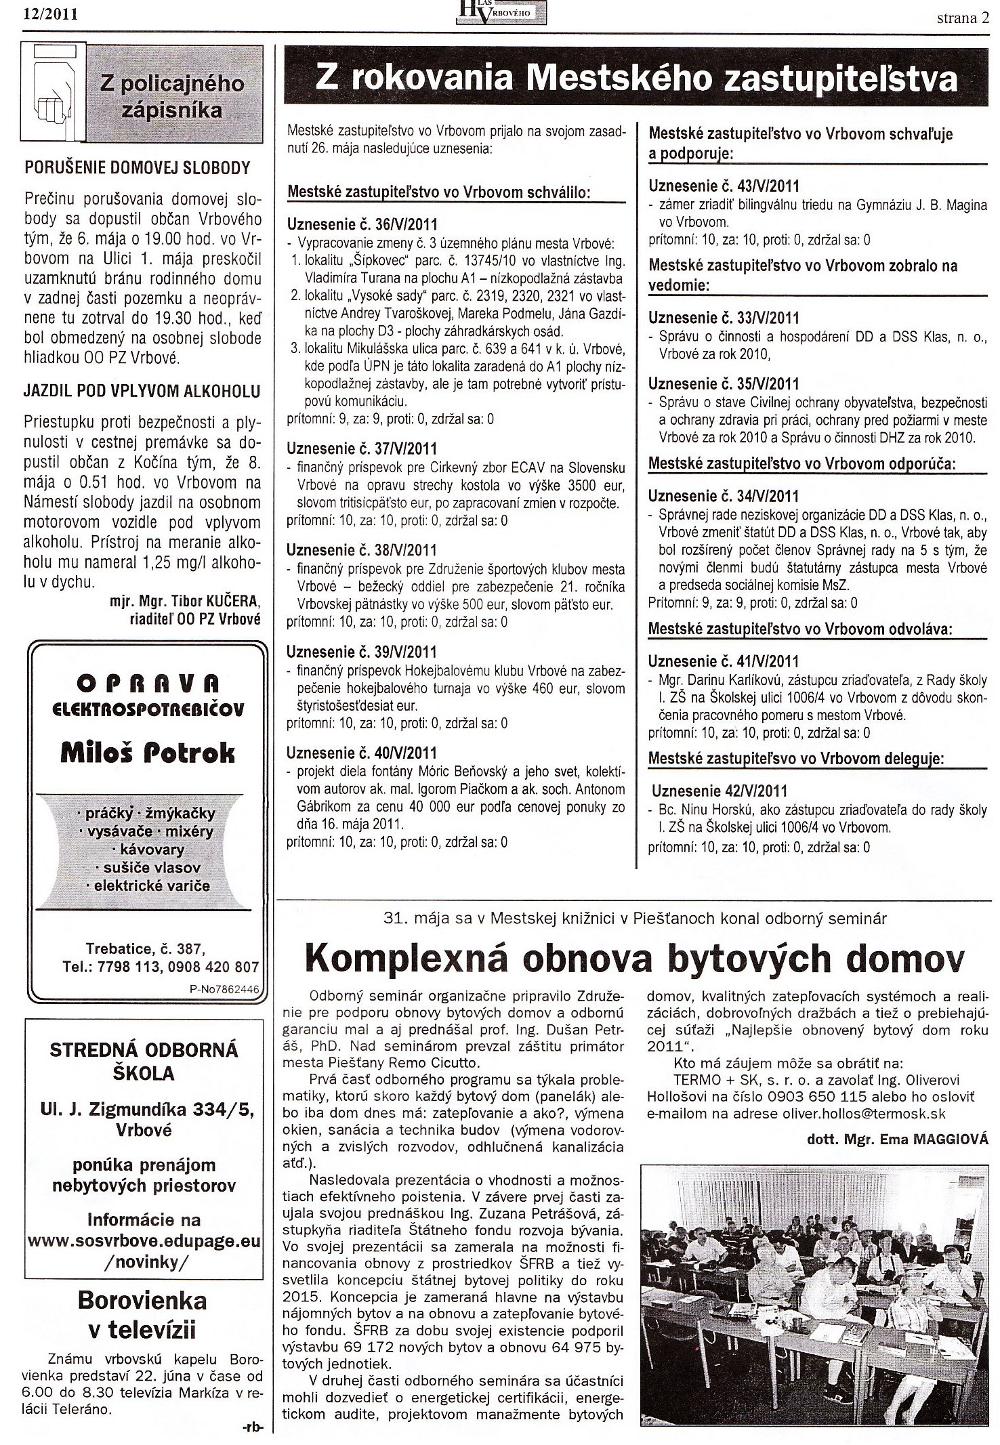 Hlas Vrbového 12/2011, strana 2